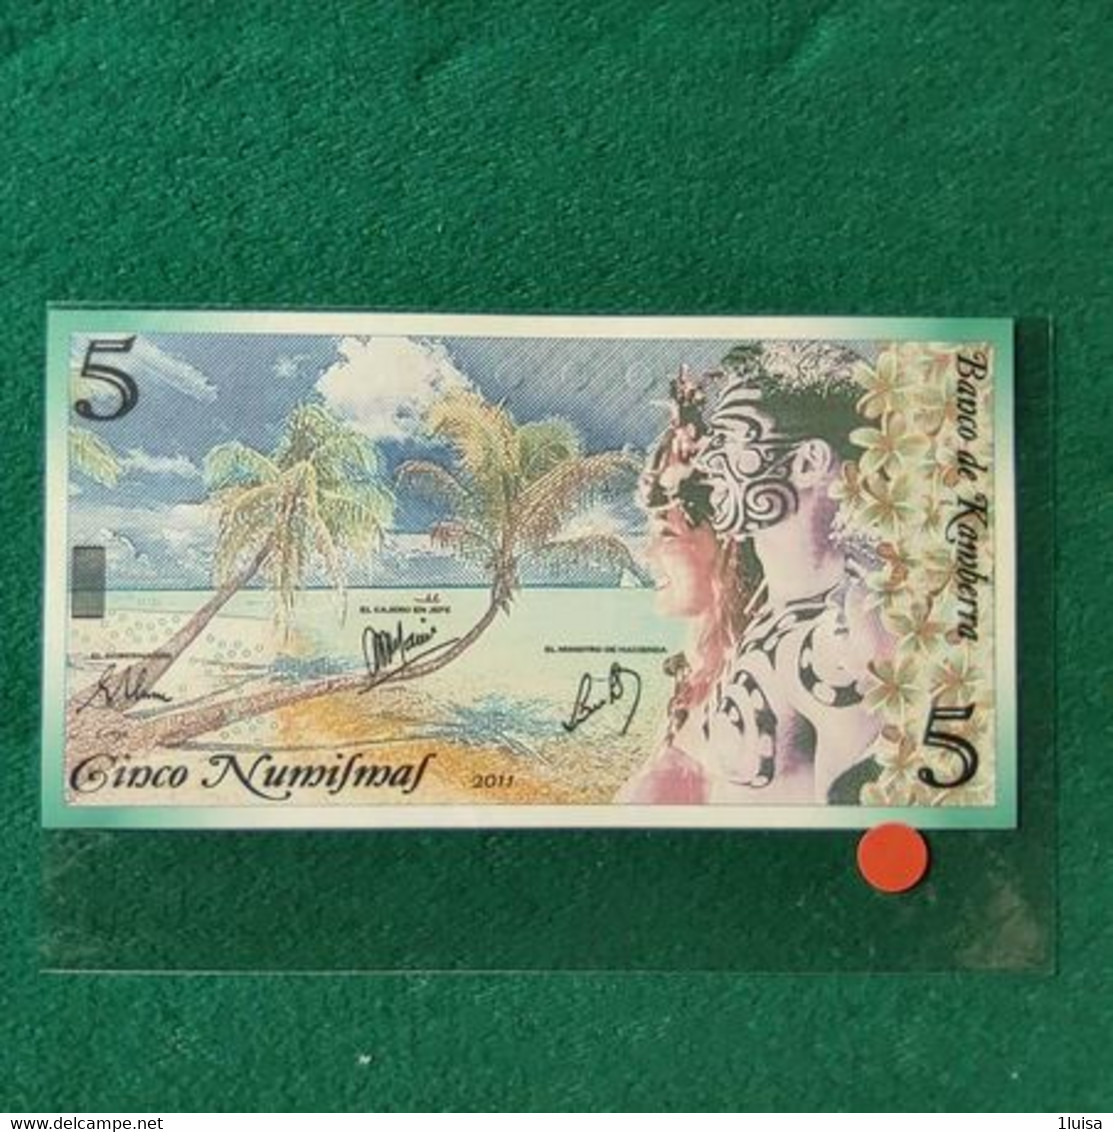 AUSTRALIA FANTASY KAMBERRA 5 - 1988 (10$ Polymer)